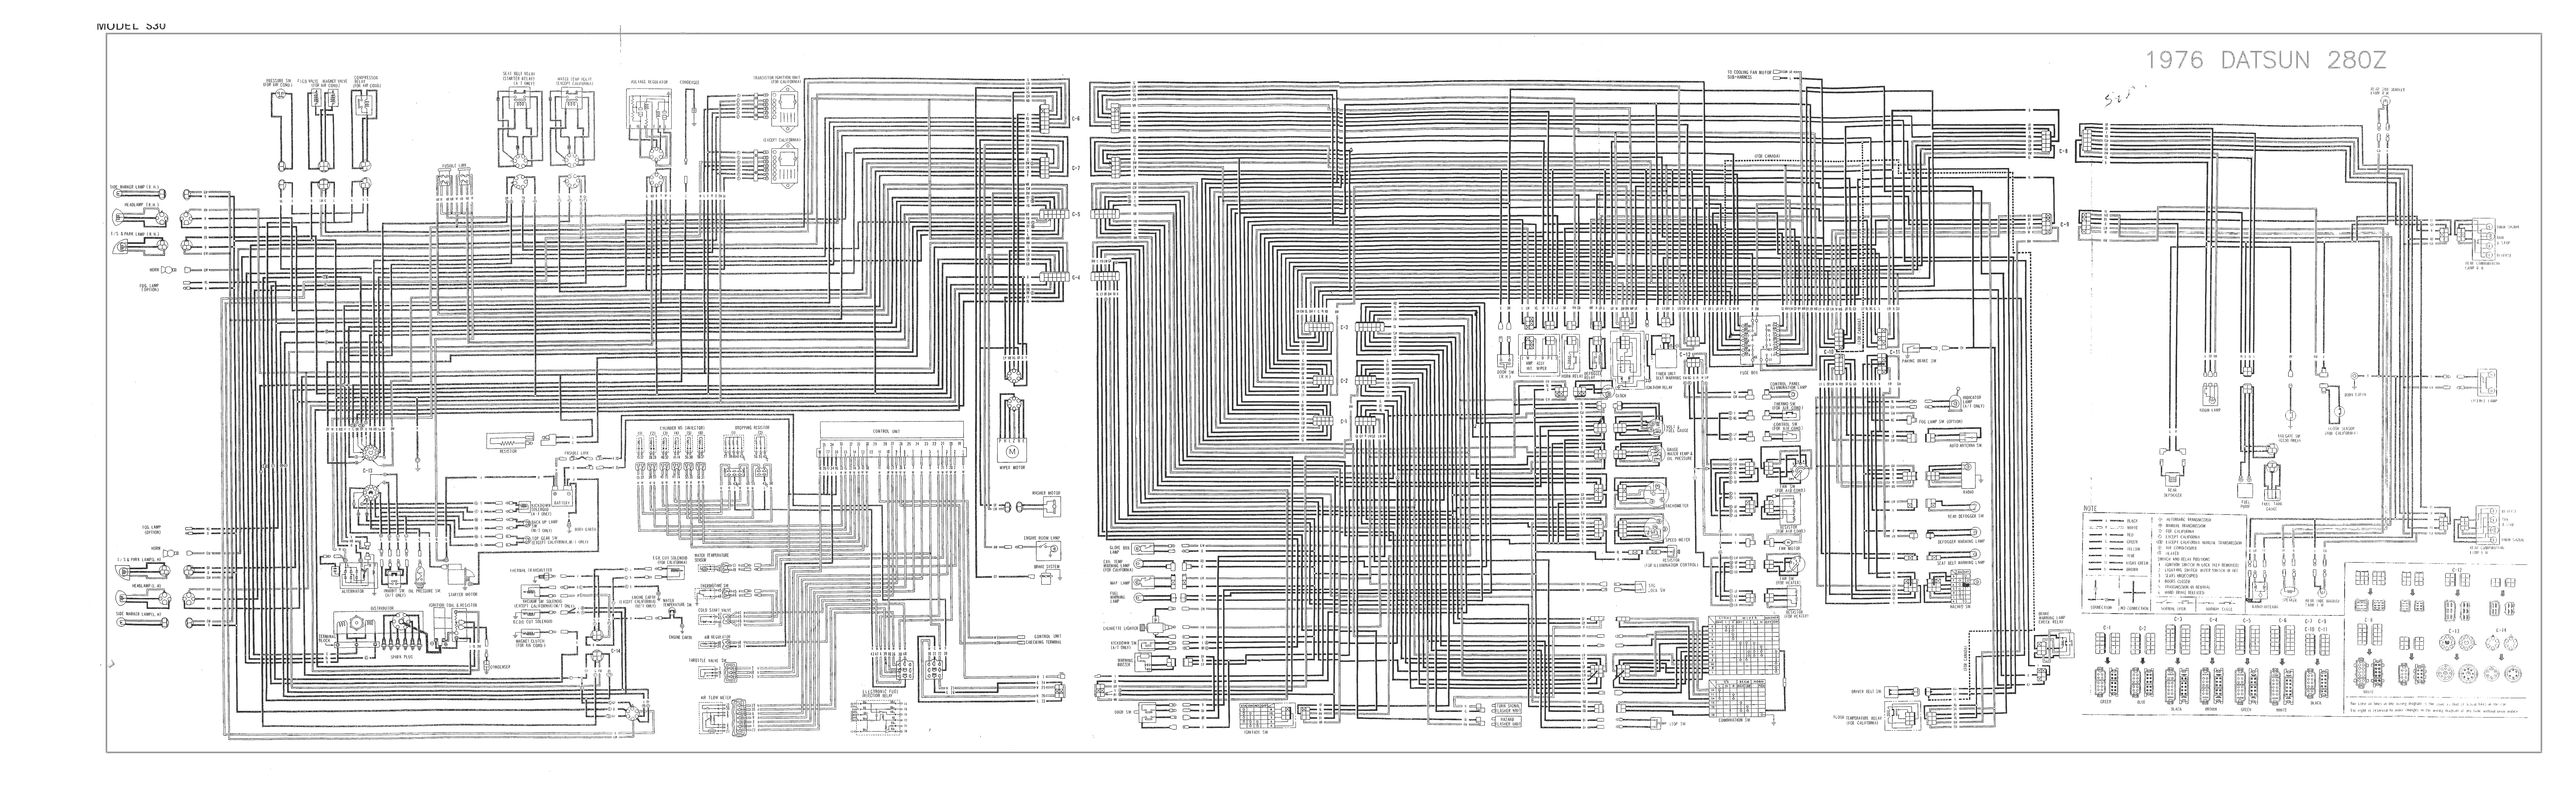 1976 280z Wiring Diagram